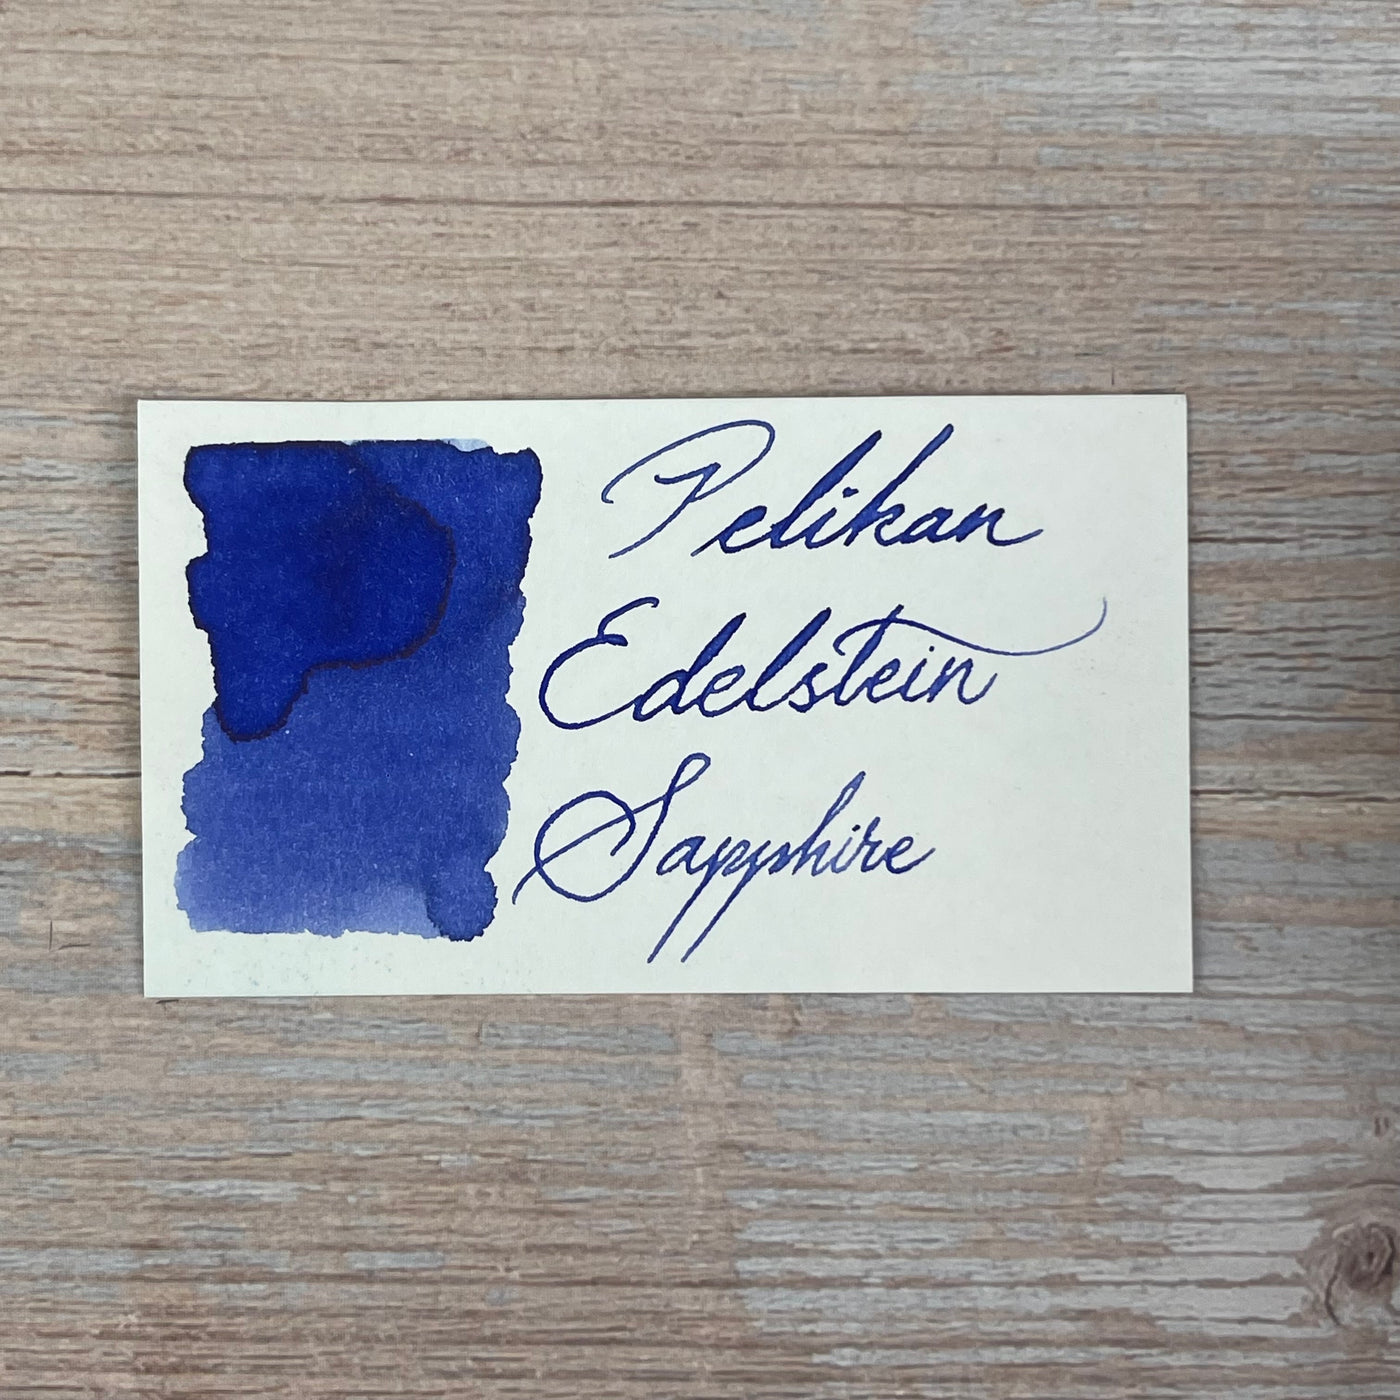 Pelikan Edelstein Sapphire - 50ml Bottled Ink